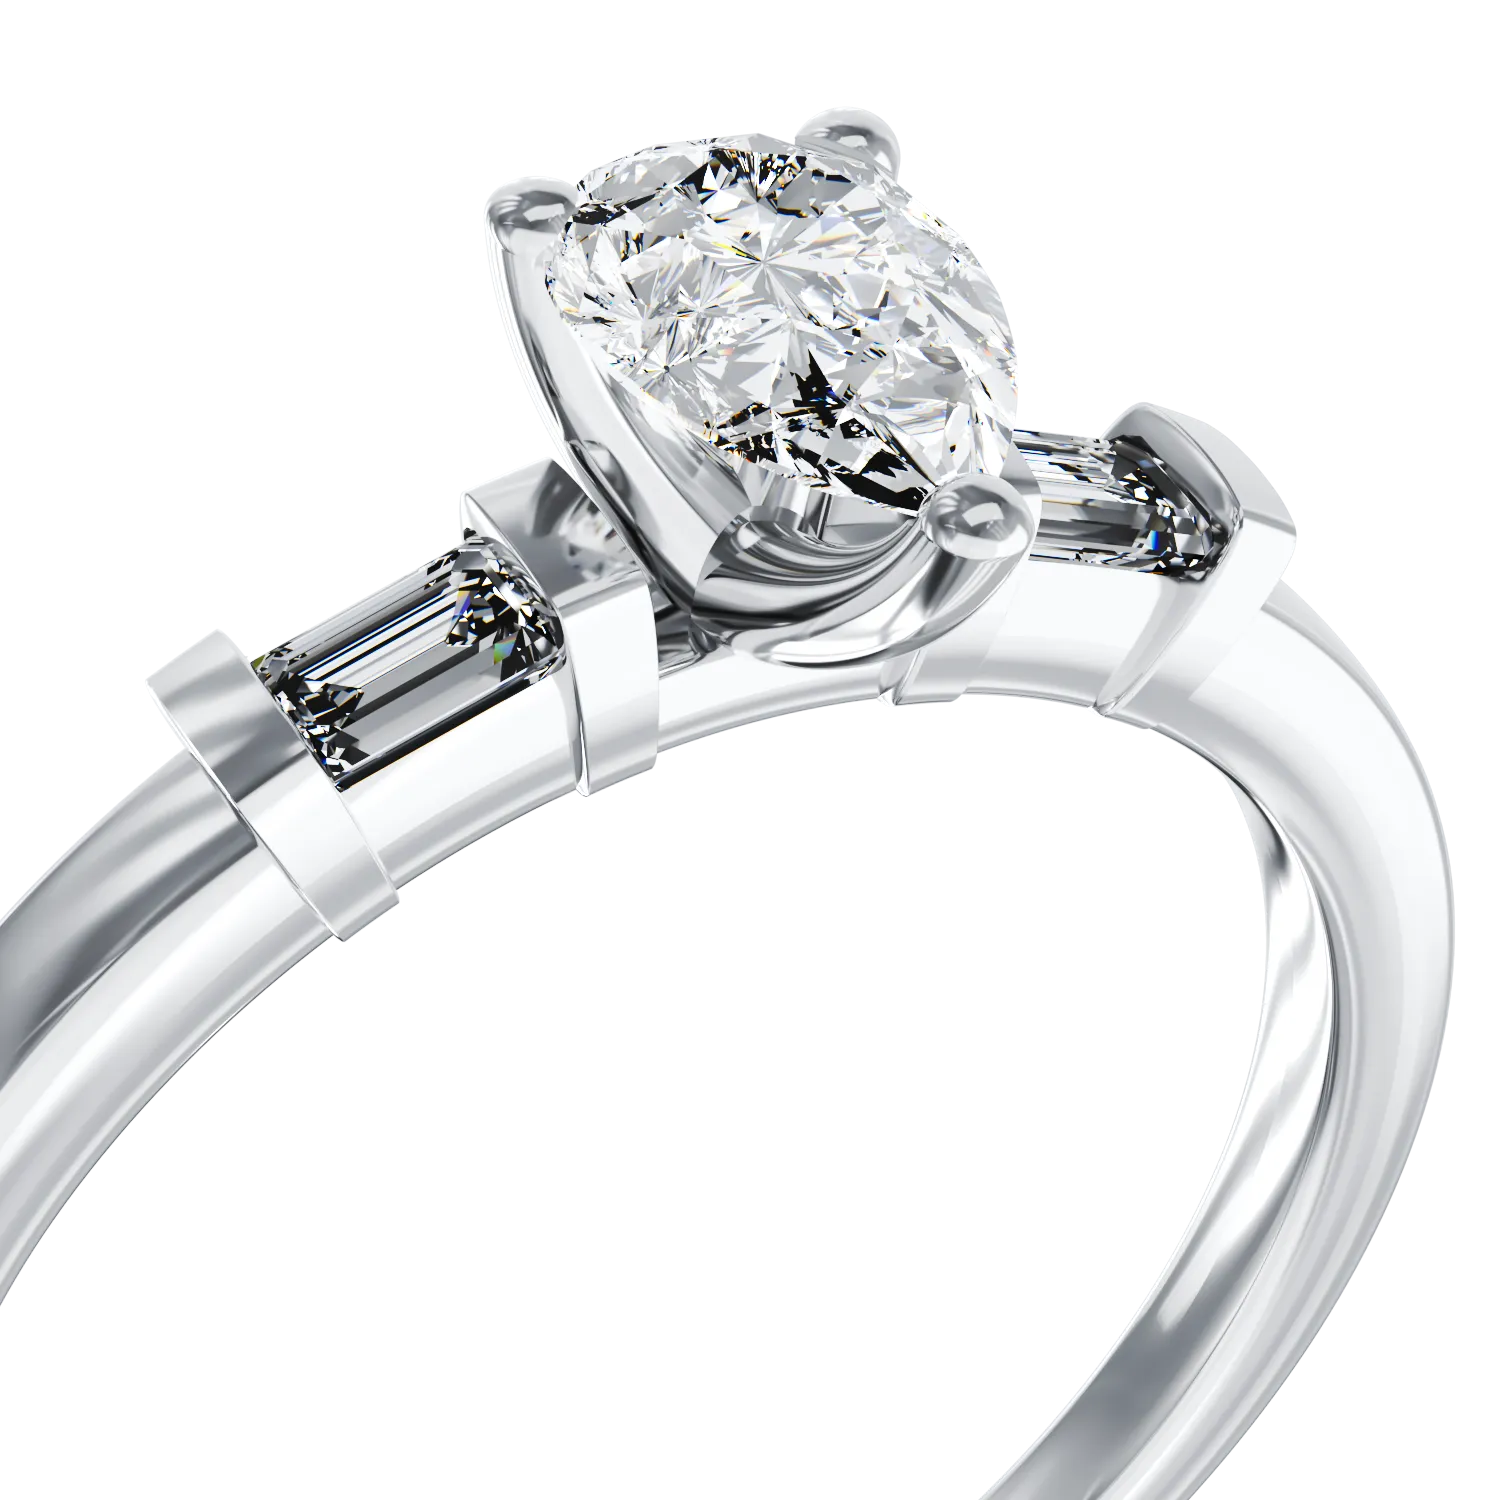 Eljegyzési gyűrű 18K-os fehér aranyból 0,41ct gyémánttal és 0,08ct gyémántokkal. Gramm: 2,79